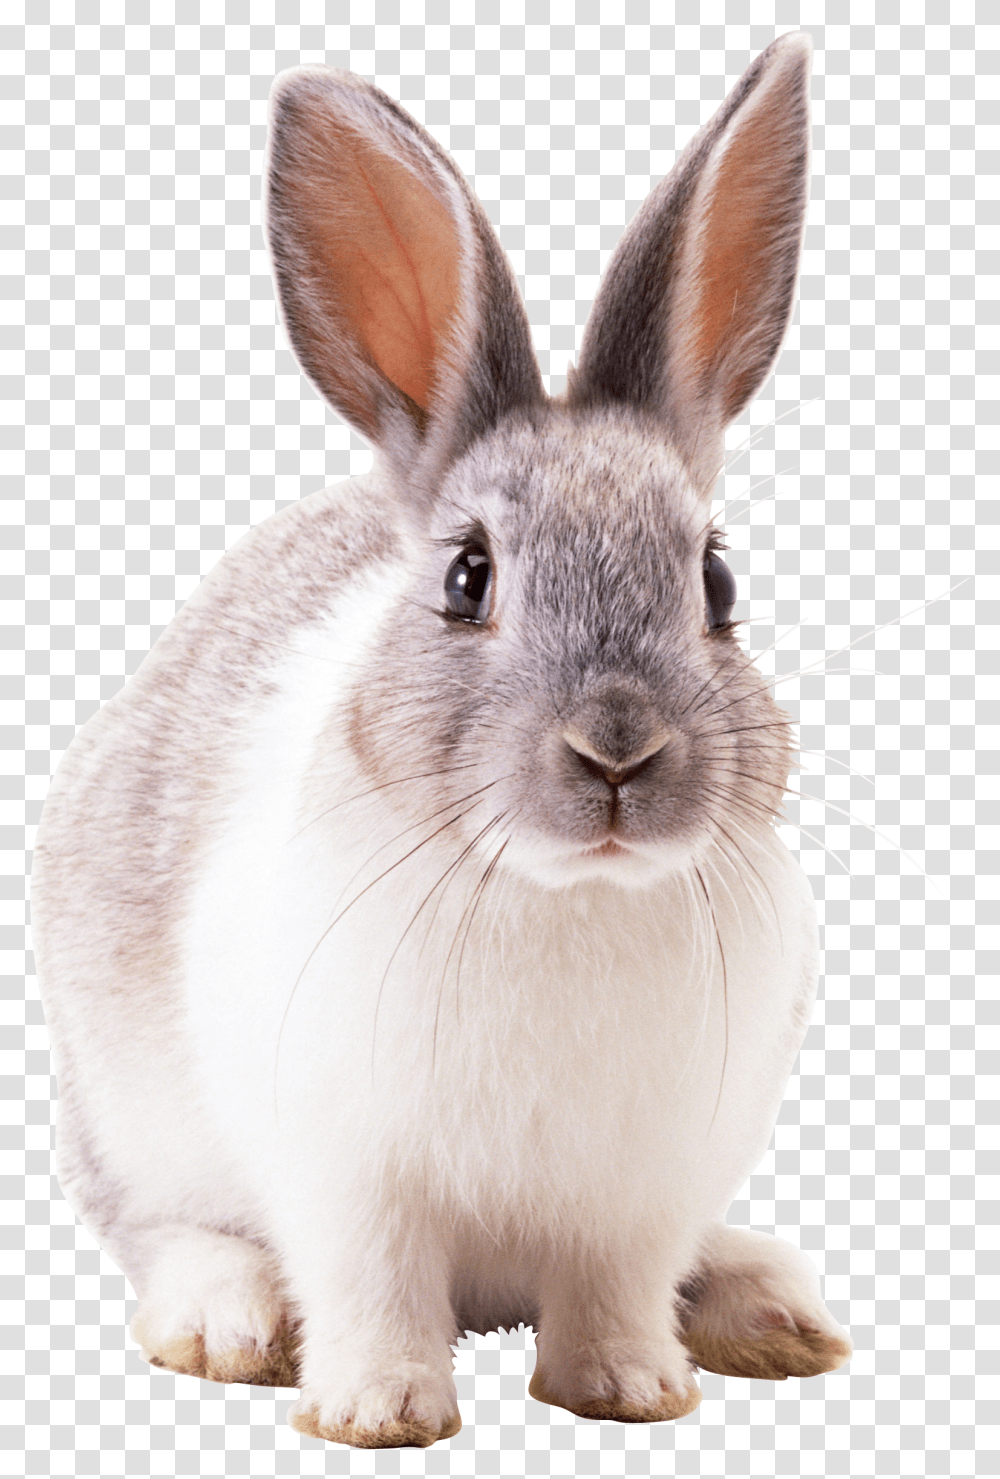 Rabbit, Cat, Pet, Mammal, Animal Transparent Png